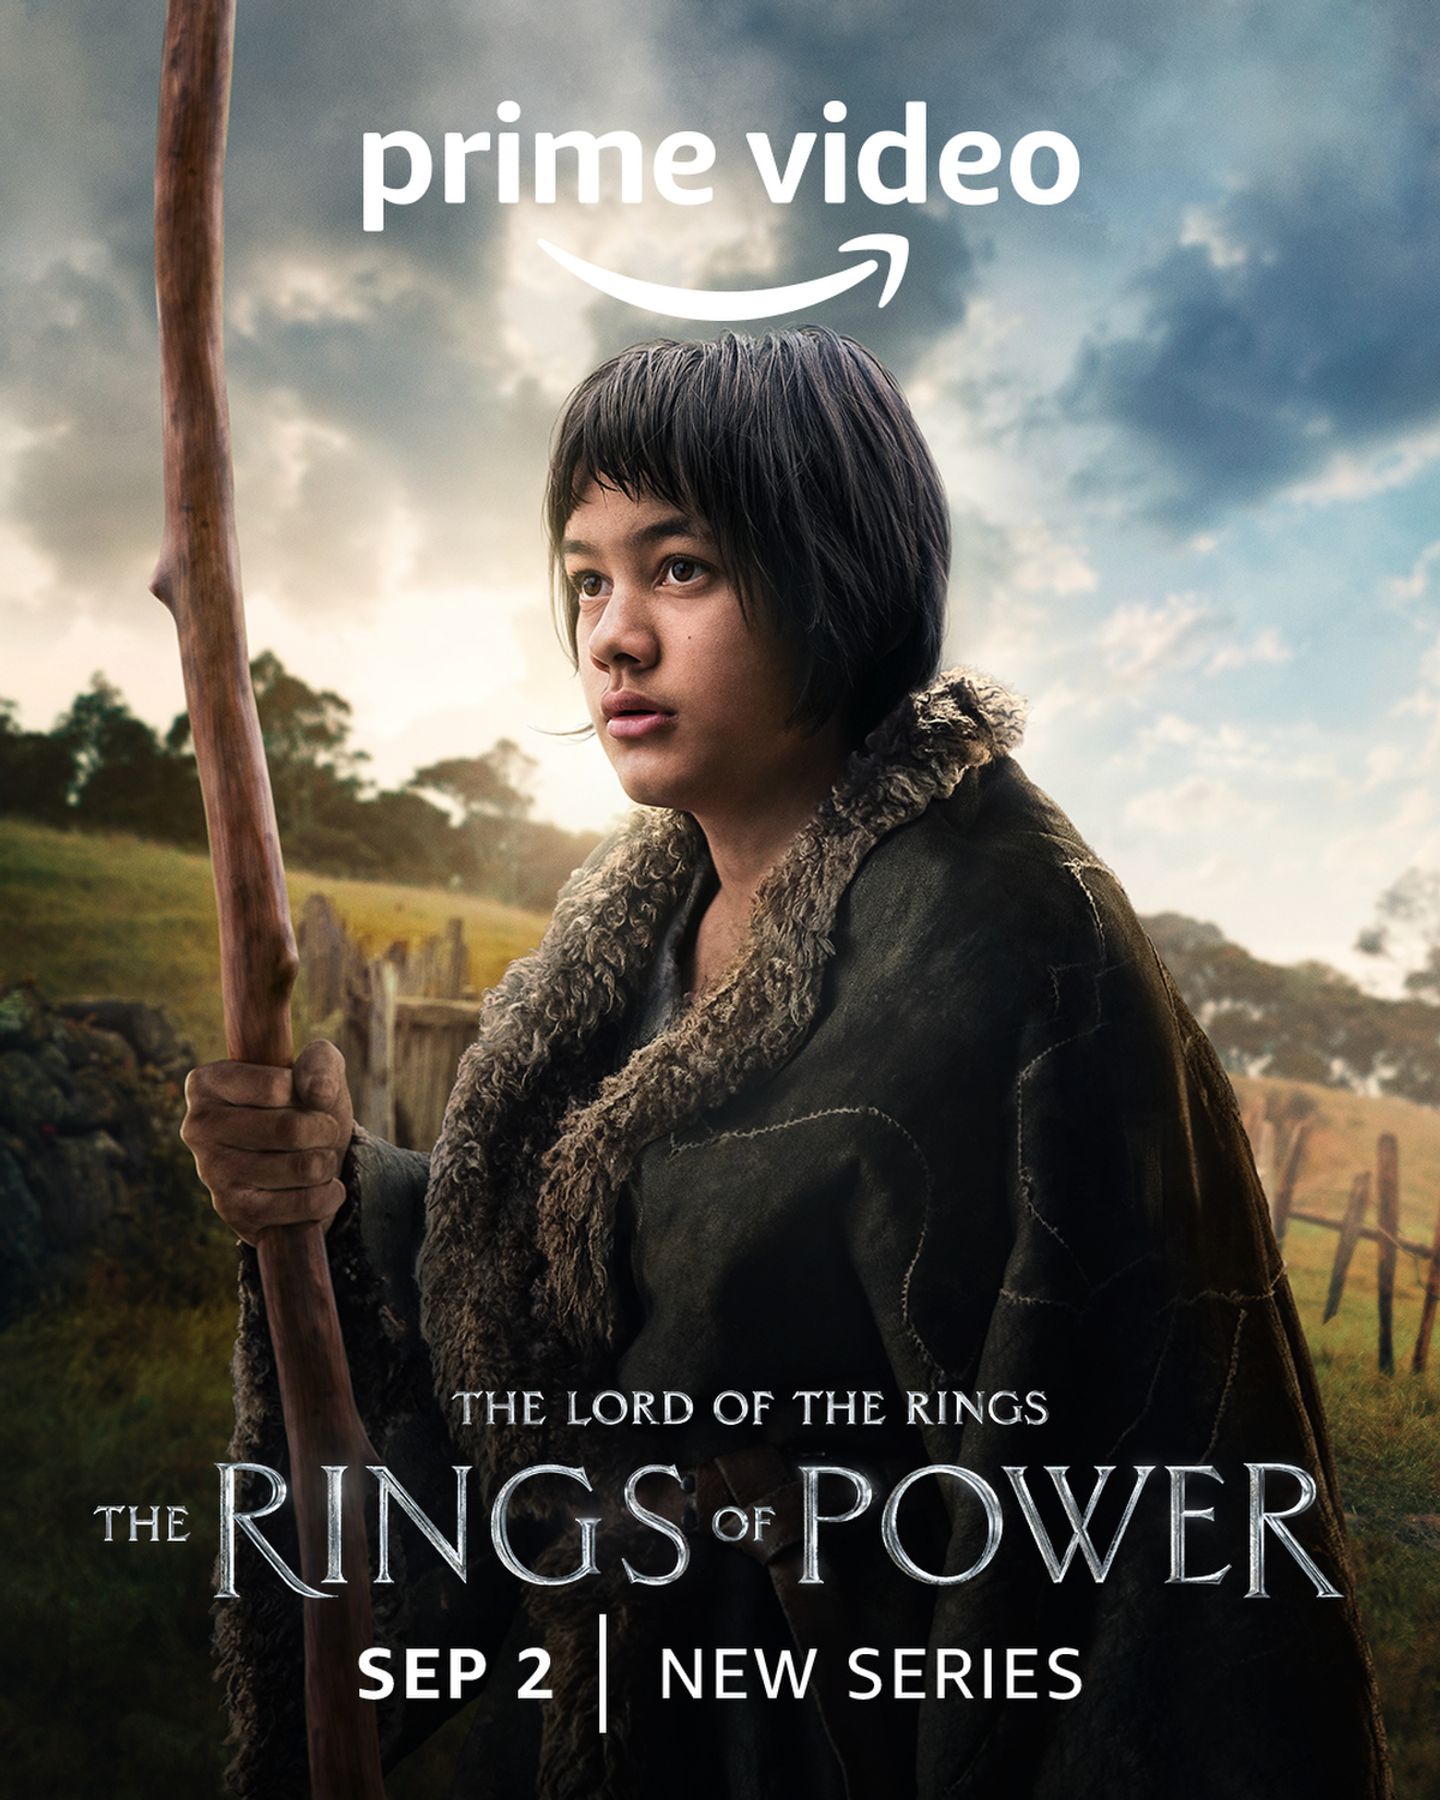 Ringenes herre: Maktens ringer/The Lord of the Rings: The Rings of Power